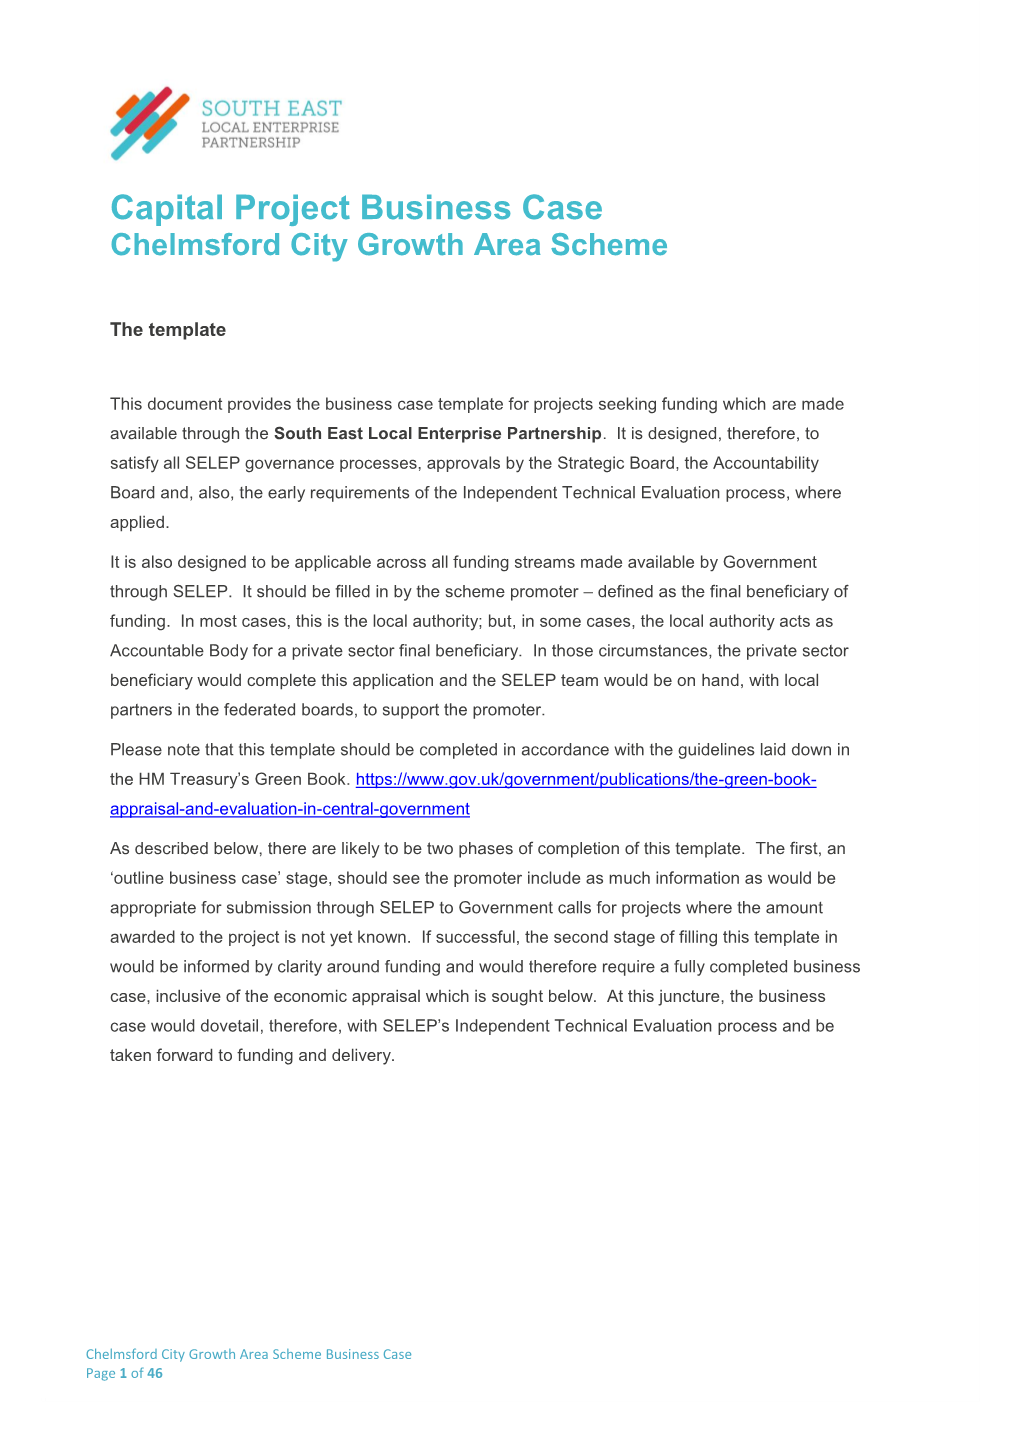 Chelmsford City Growth Area Scheme